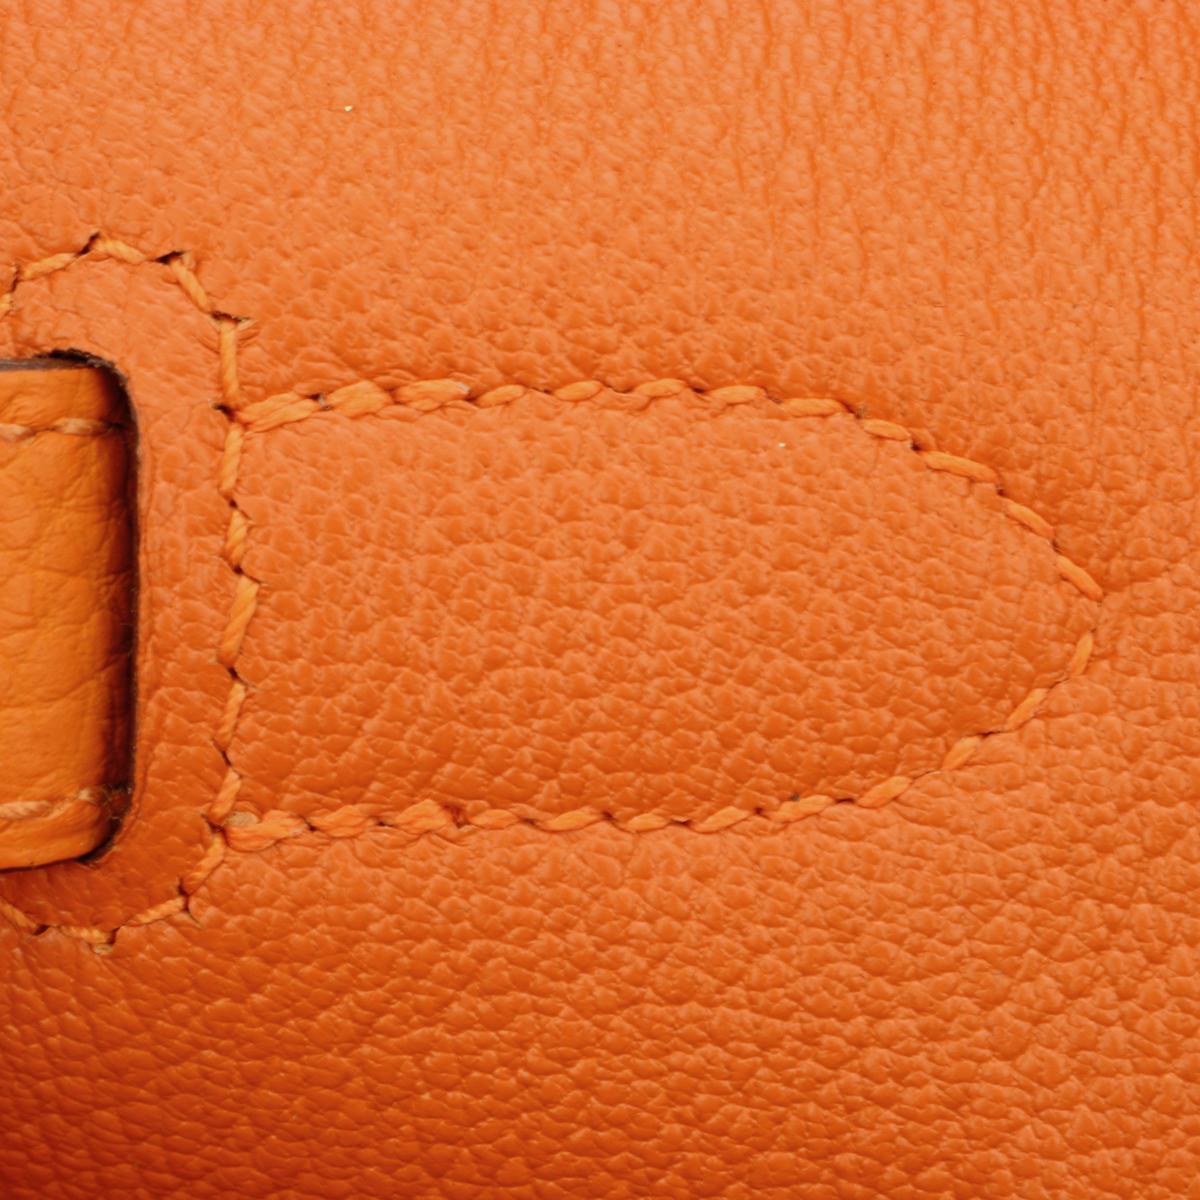 Hermès Birkin Bag 35cm Orange Togo Leather with Palladium Hardware Stamp N 2010 9